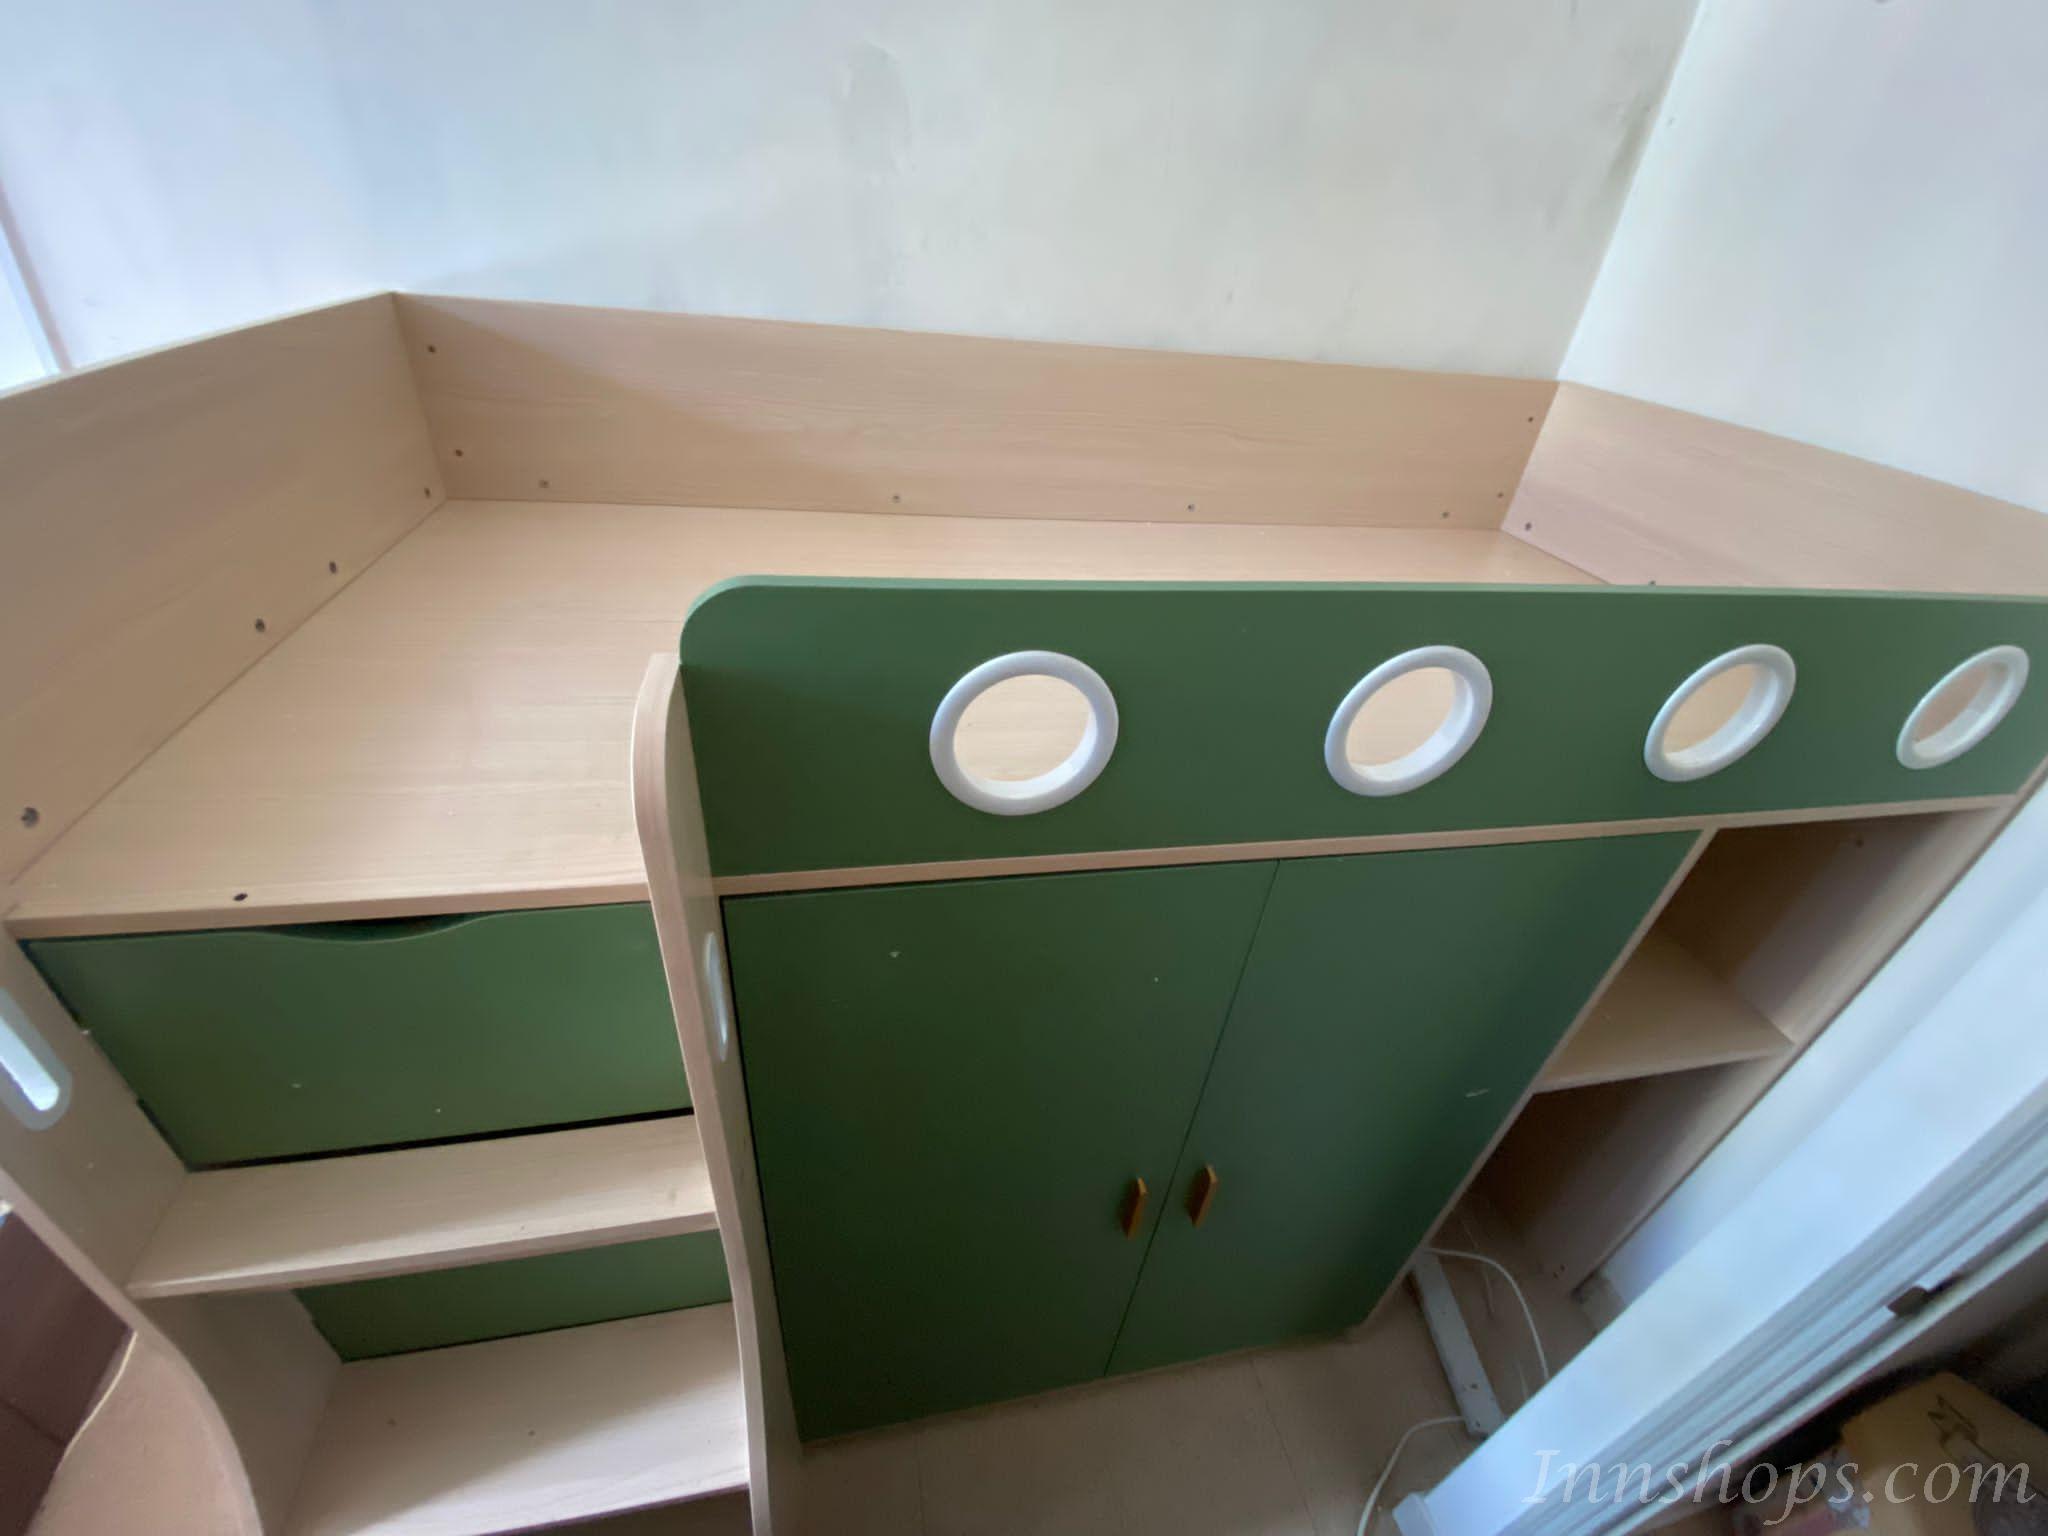 兒童皇國 兒童床帶書桌多功能床 家具組合套裝 小朋友床 90/120cm (不包床褥)(IS8175)